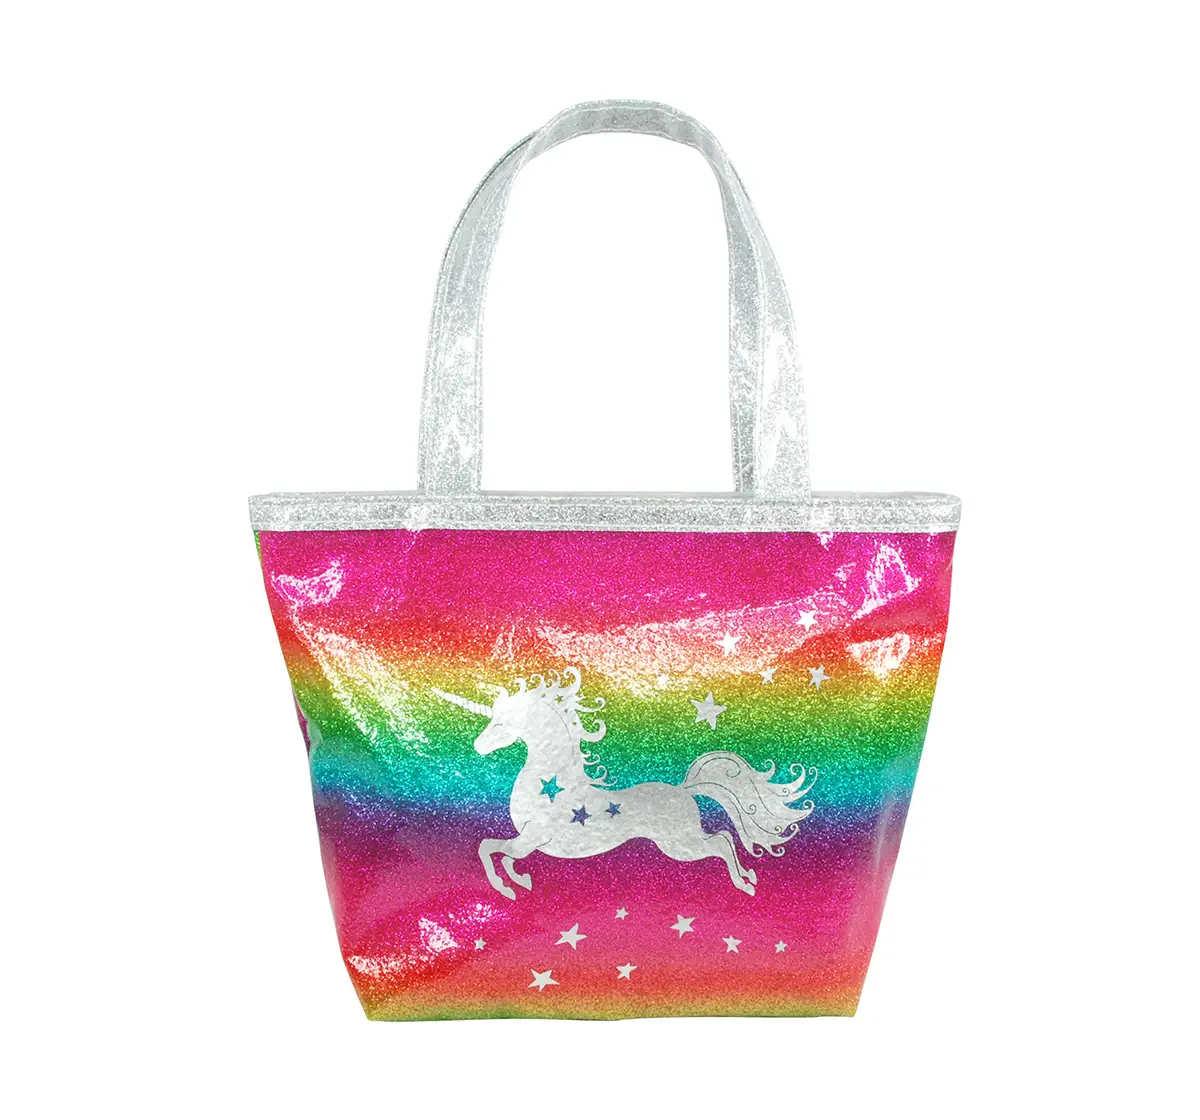 Shop Luvley Rainbow Fantasy Handbag Girls Accessories age 3Y+ | Hamleys ...